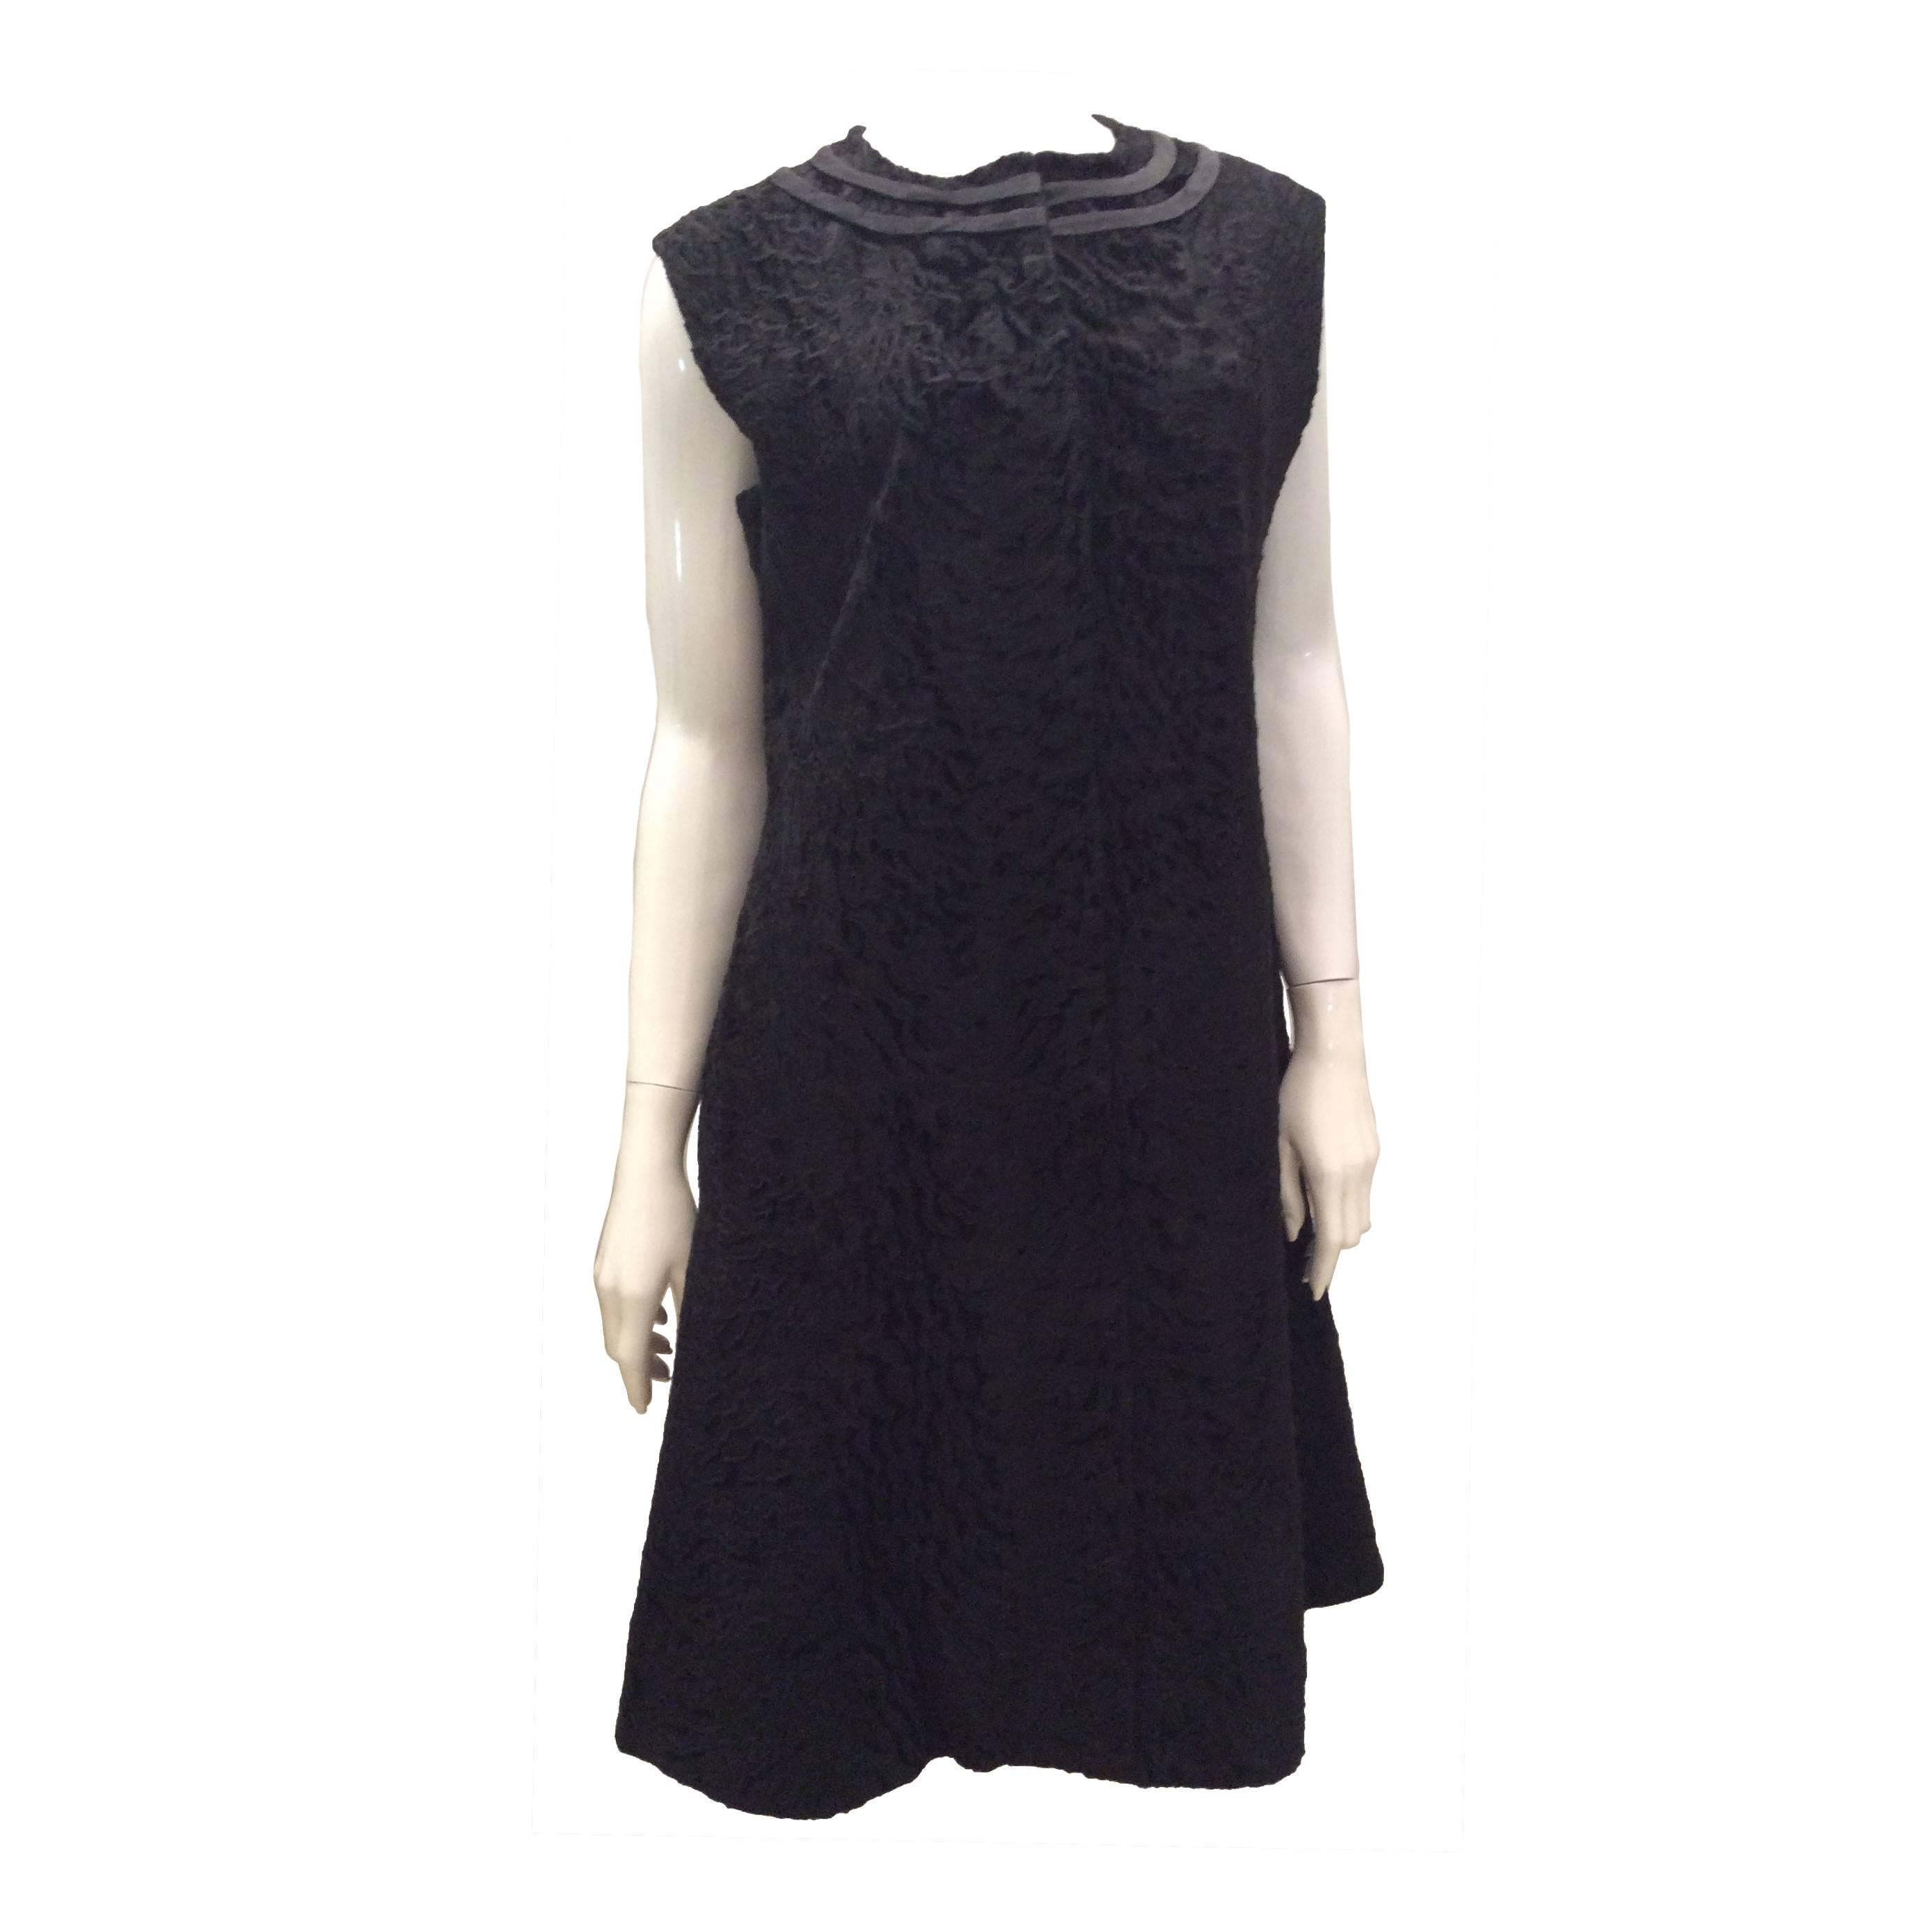 Beautiful 1960's Genuine Persian Lamb Black Dress - Rare - 8 -14 For Sale